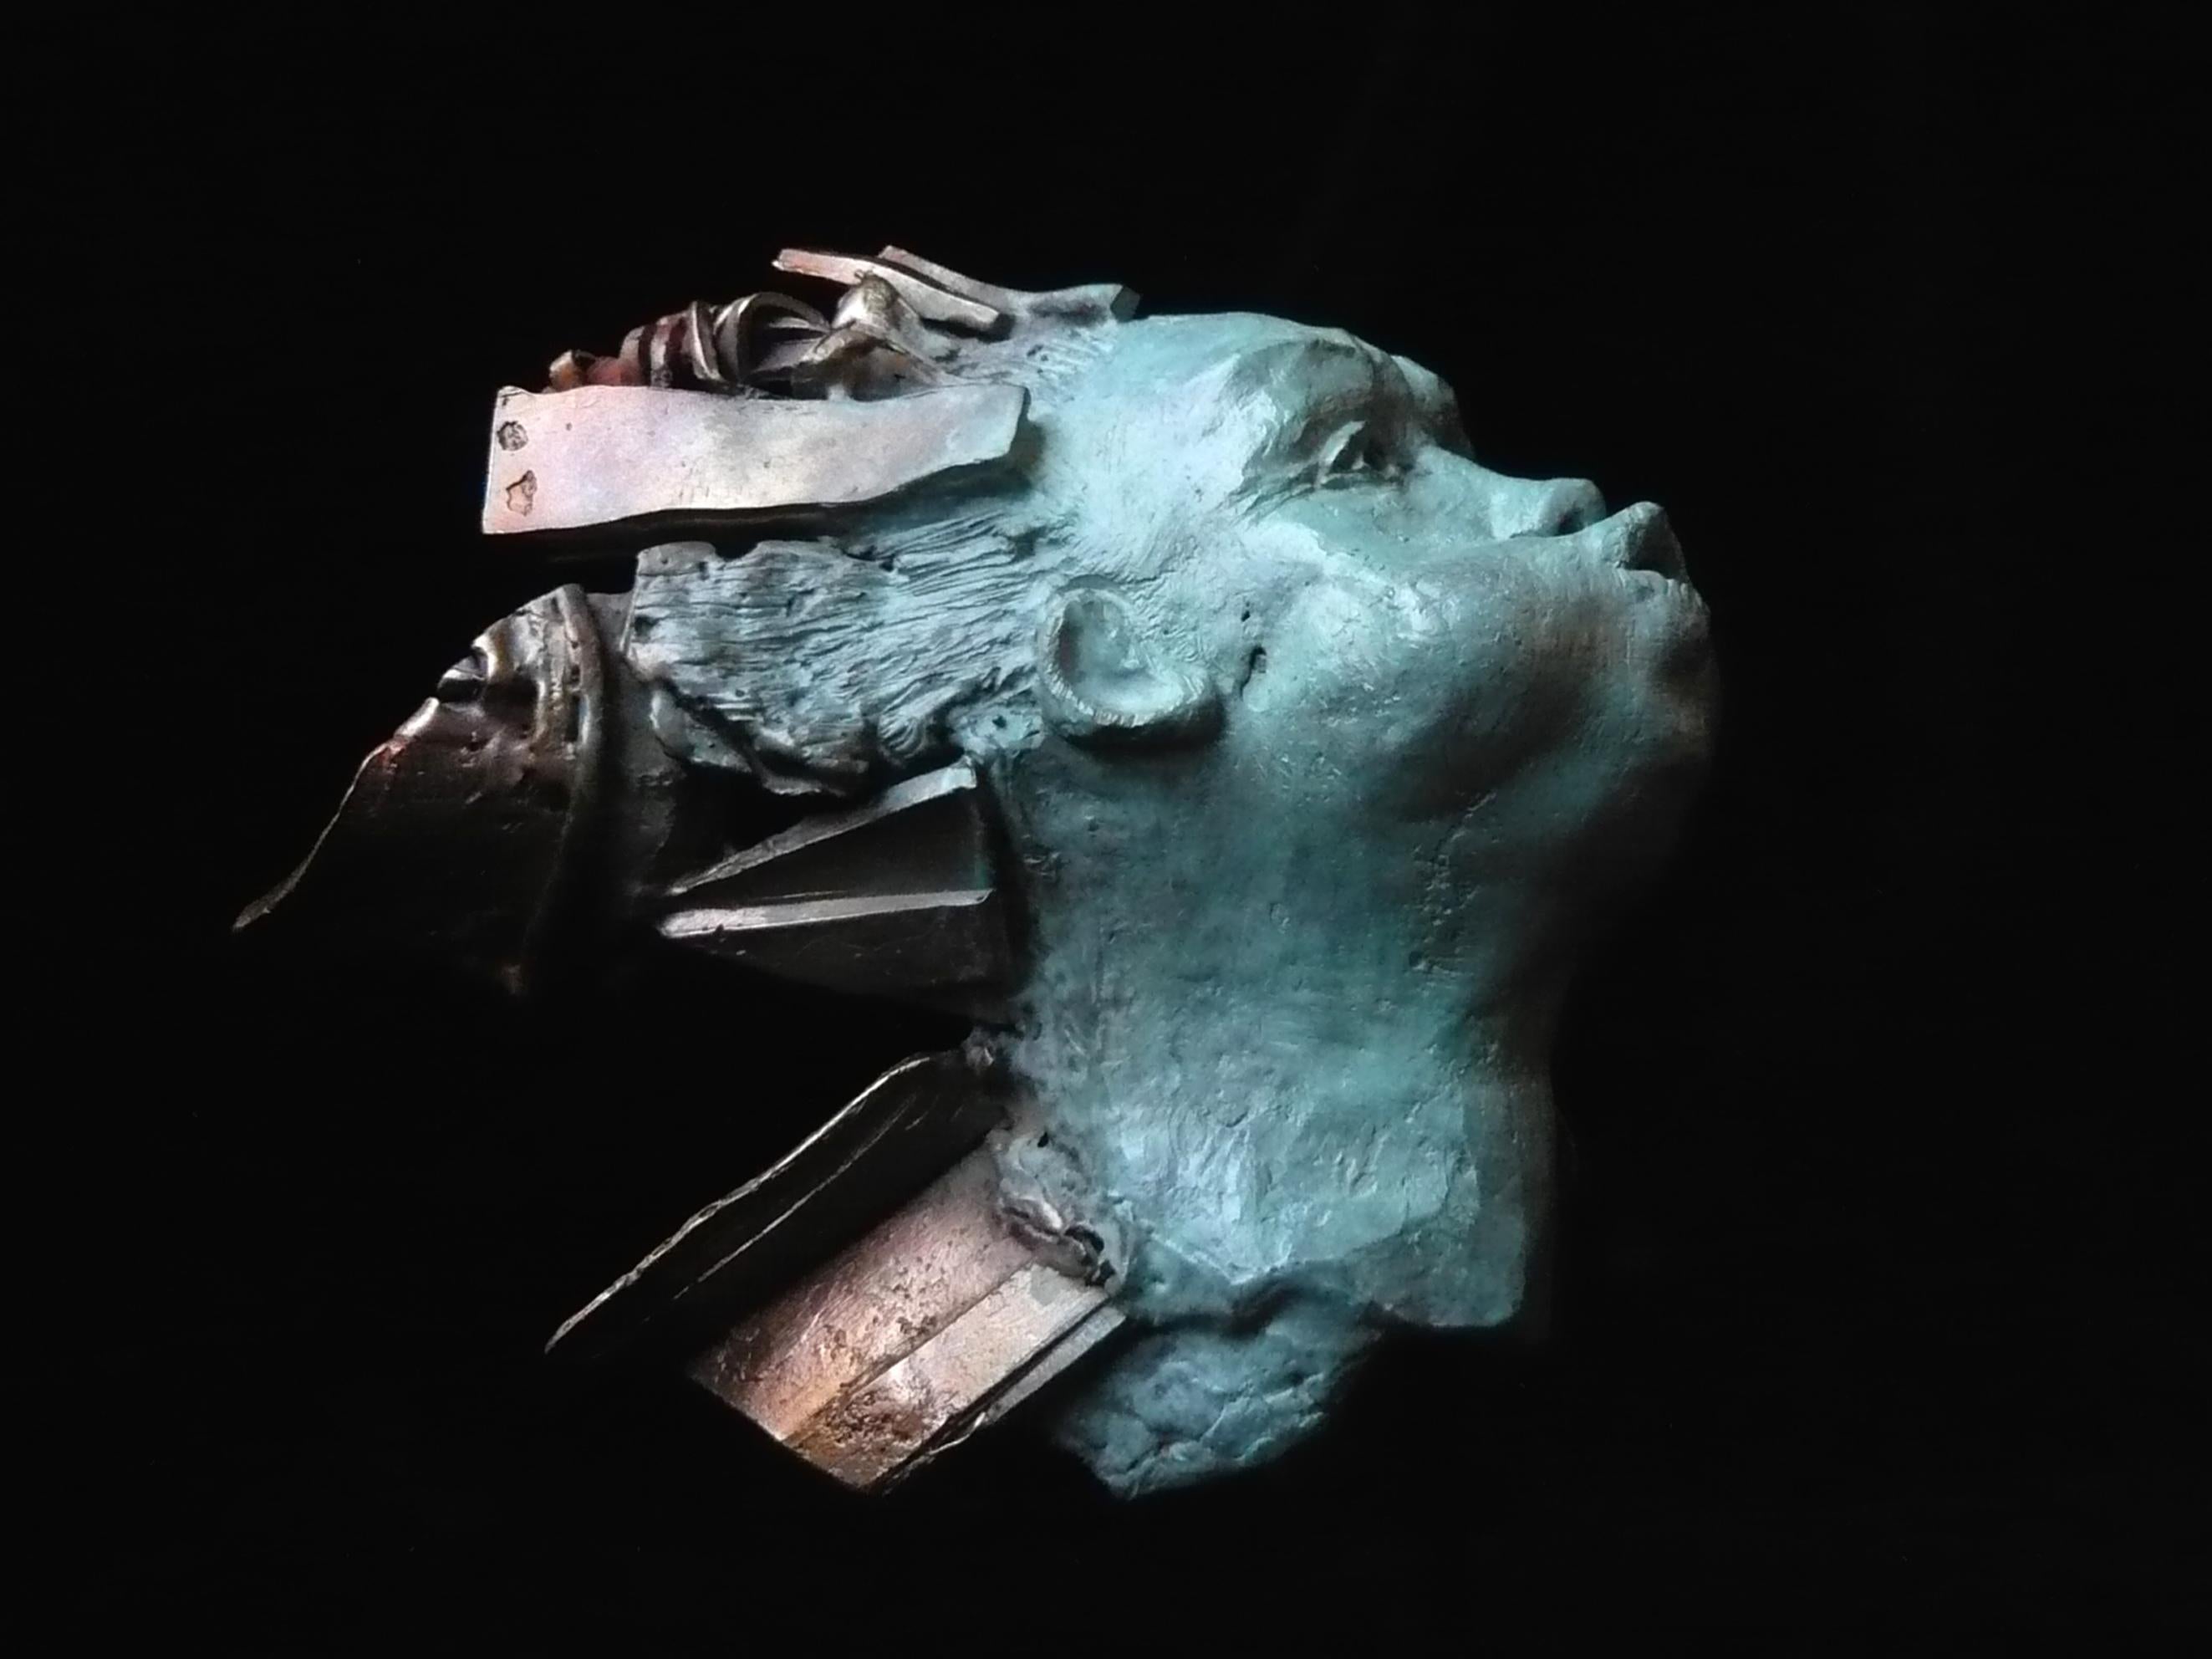 One-off bronze sculpture, 22 cm × 12 cm × 12 cm.
Chésade’s sculpture is part of the contemporary 